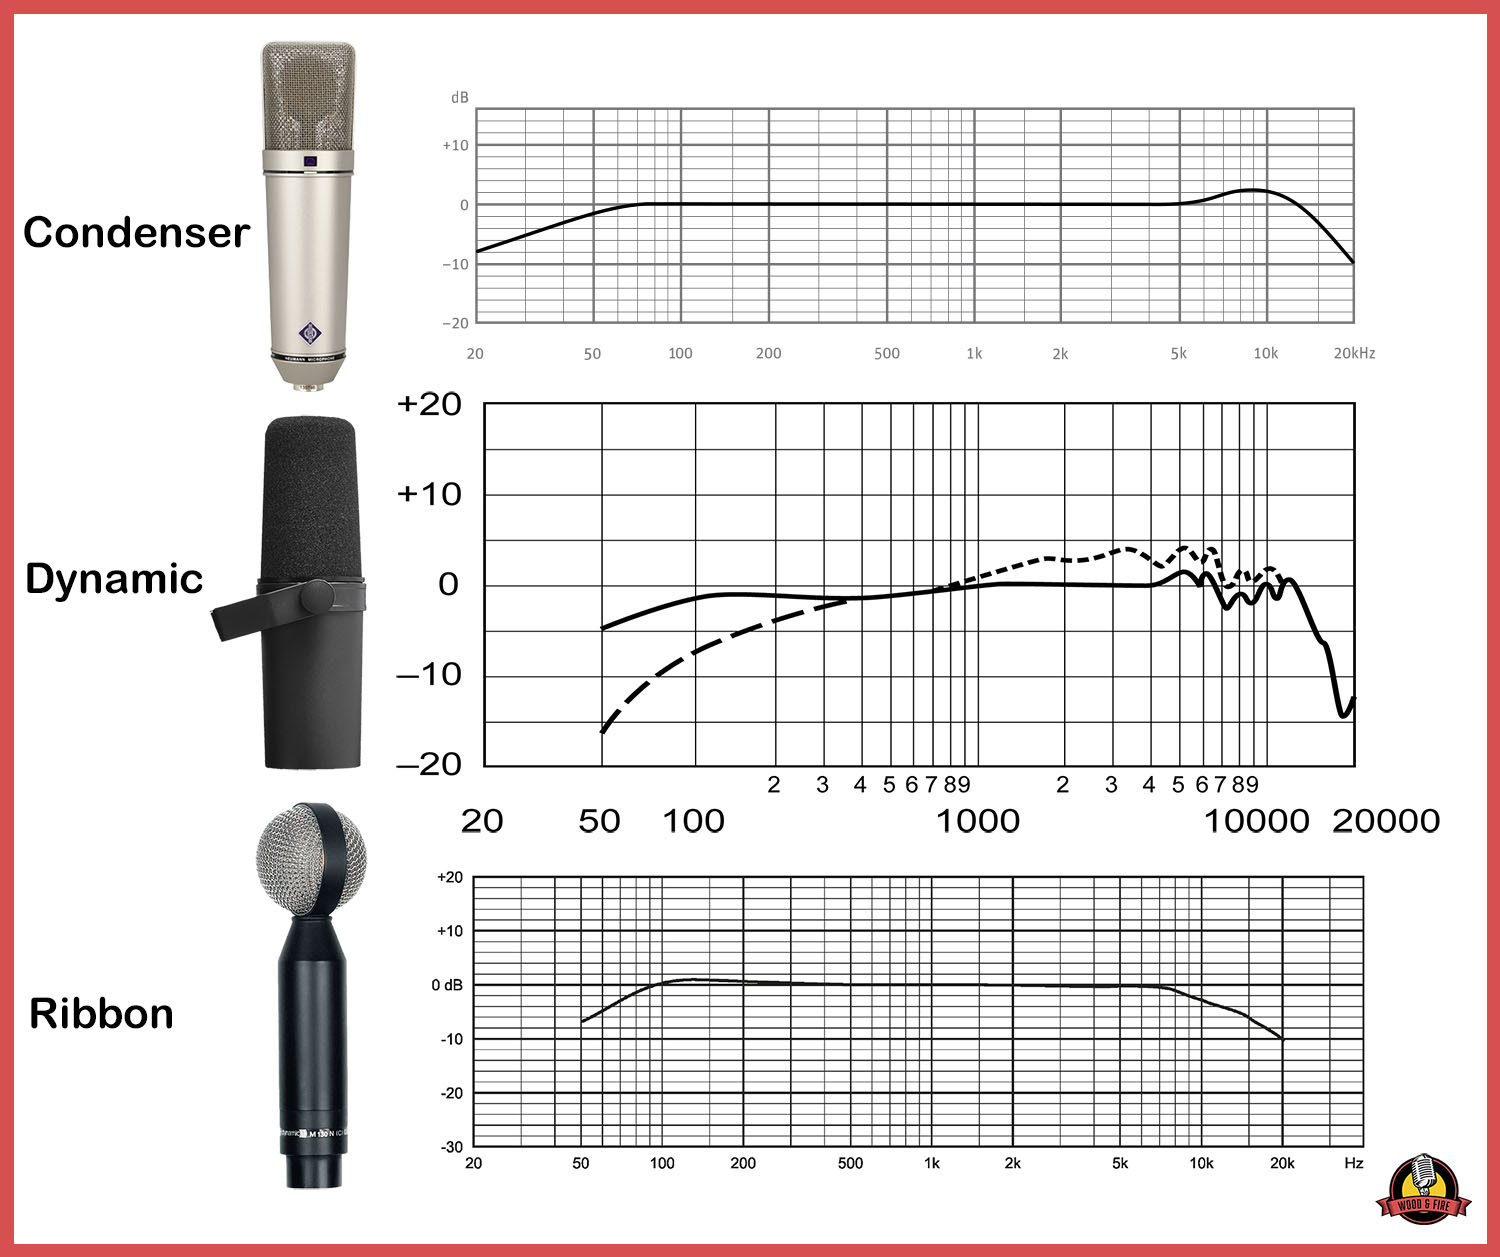 Comparação das curvas de frequência de cada tipo de microfone com os modelos mais populares de cada classe